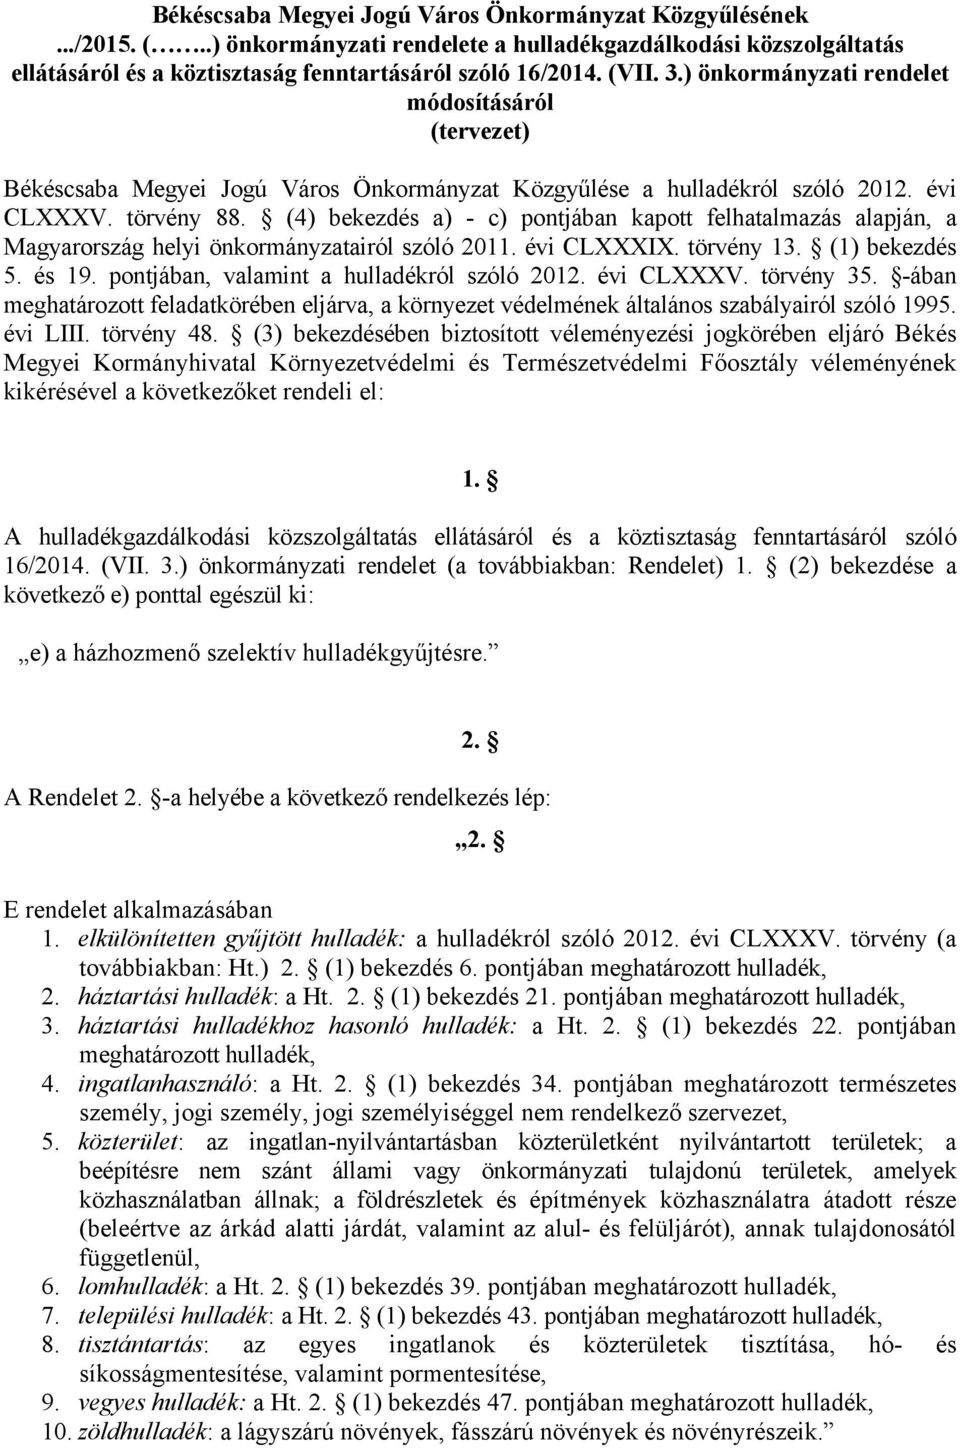 (4) bekezdés a) - c) pontjában kapott felhatalmazás alapján, a Magyarország helyi önkormányzatairól szóló 2011. évi CLXXXIX. törvény 13. (1) bekezdés 5. és 19.